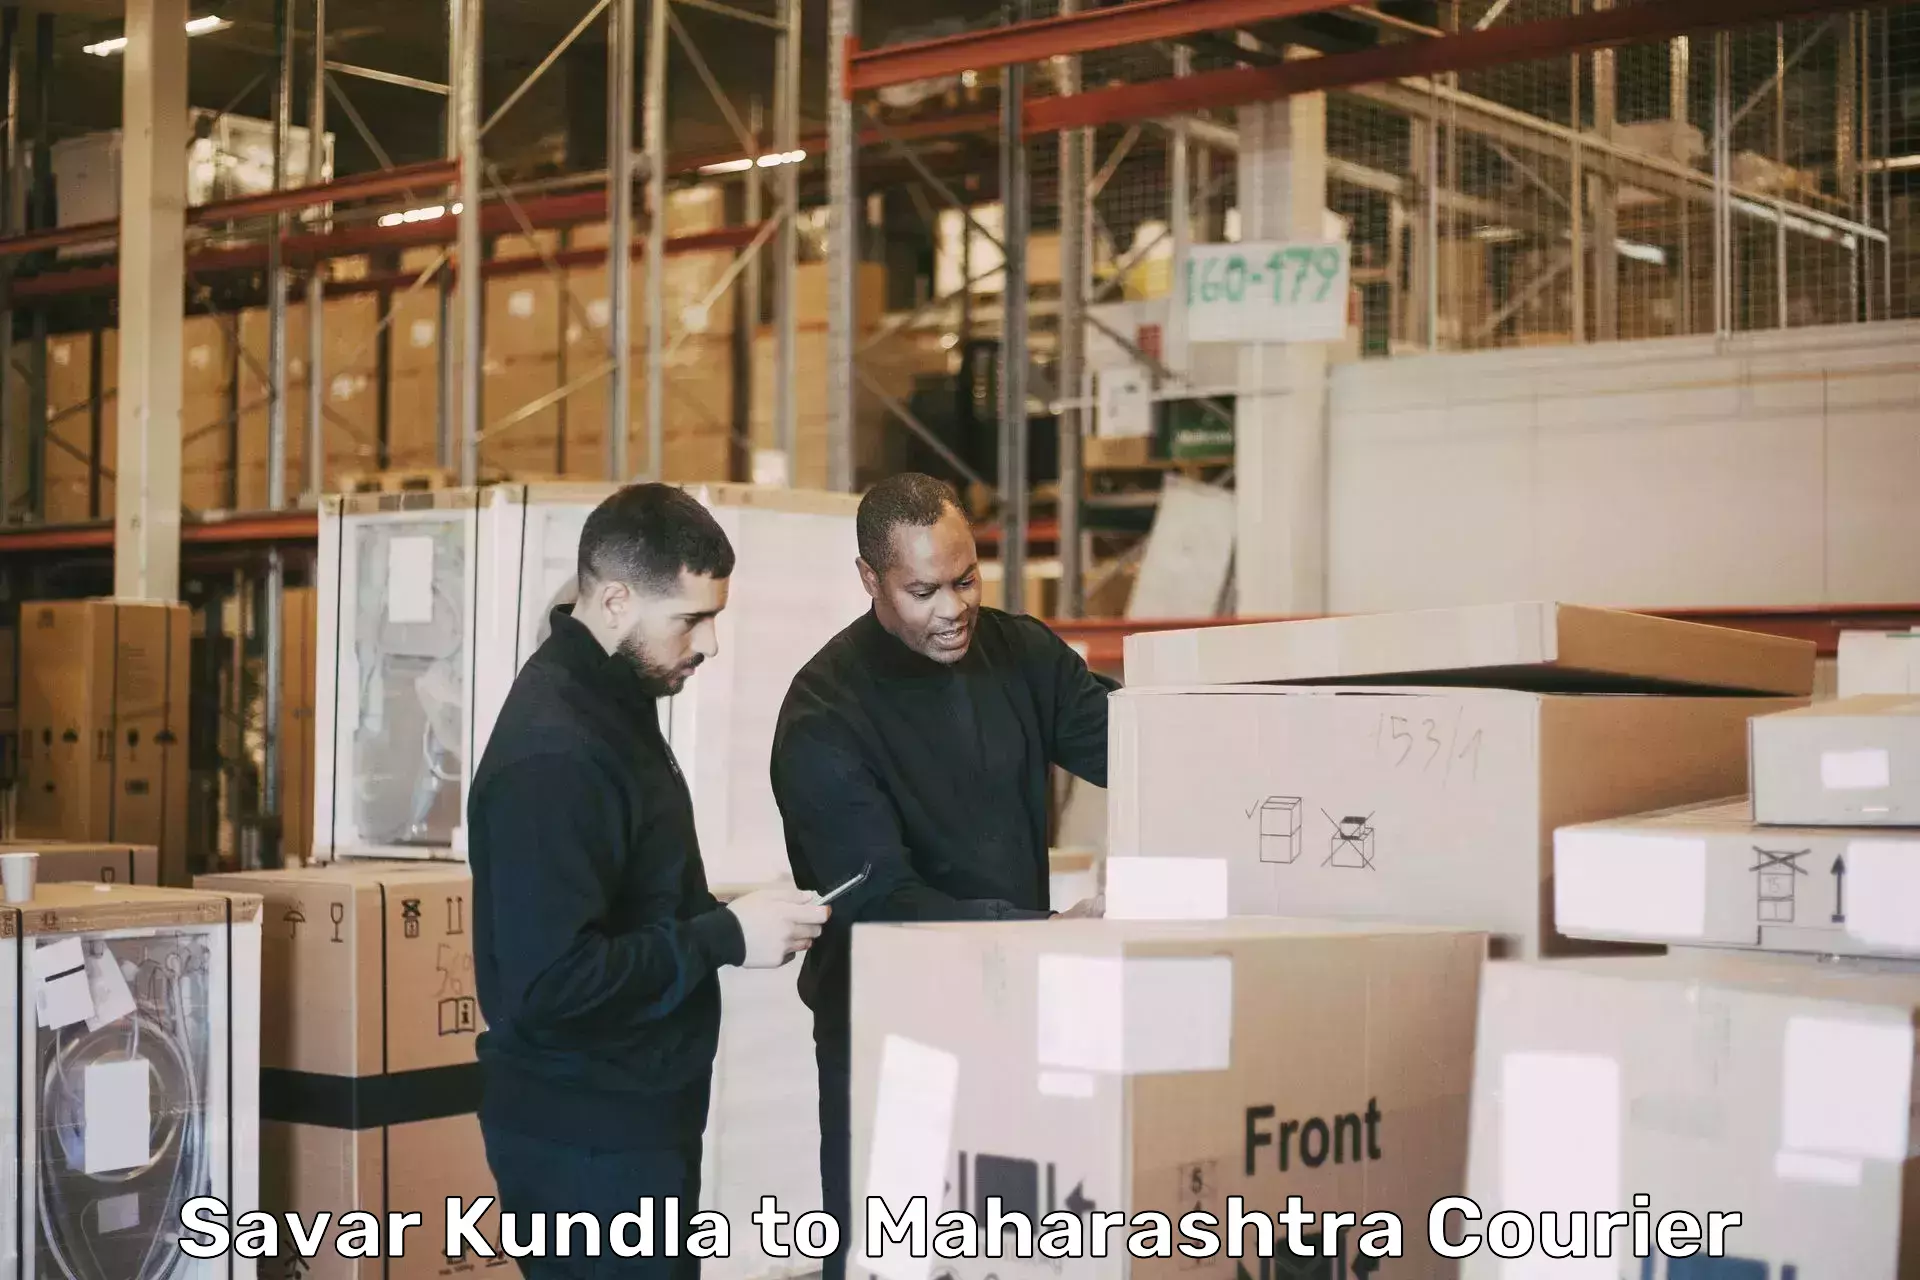 Furniture delivery service Savar Kundla to Kandhar